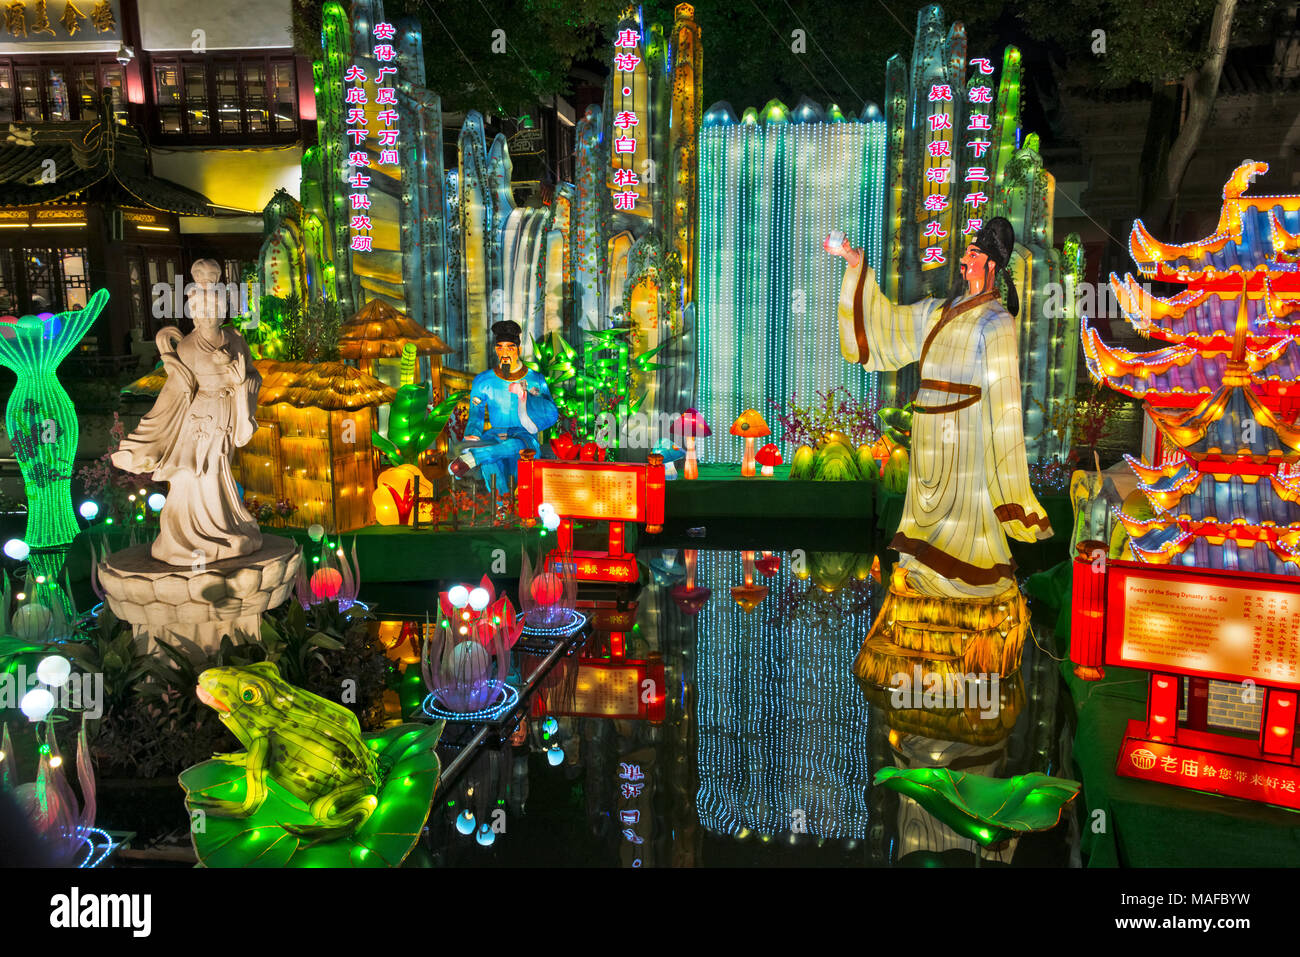 Lumières colorées à Lantern Festival célébrant le Nouvel An chinois dans le jardin Yuyuan, Shanghai, Chine Banque D'Images